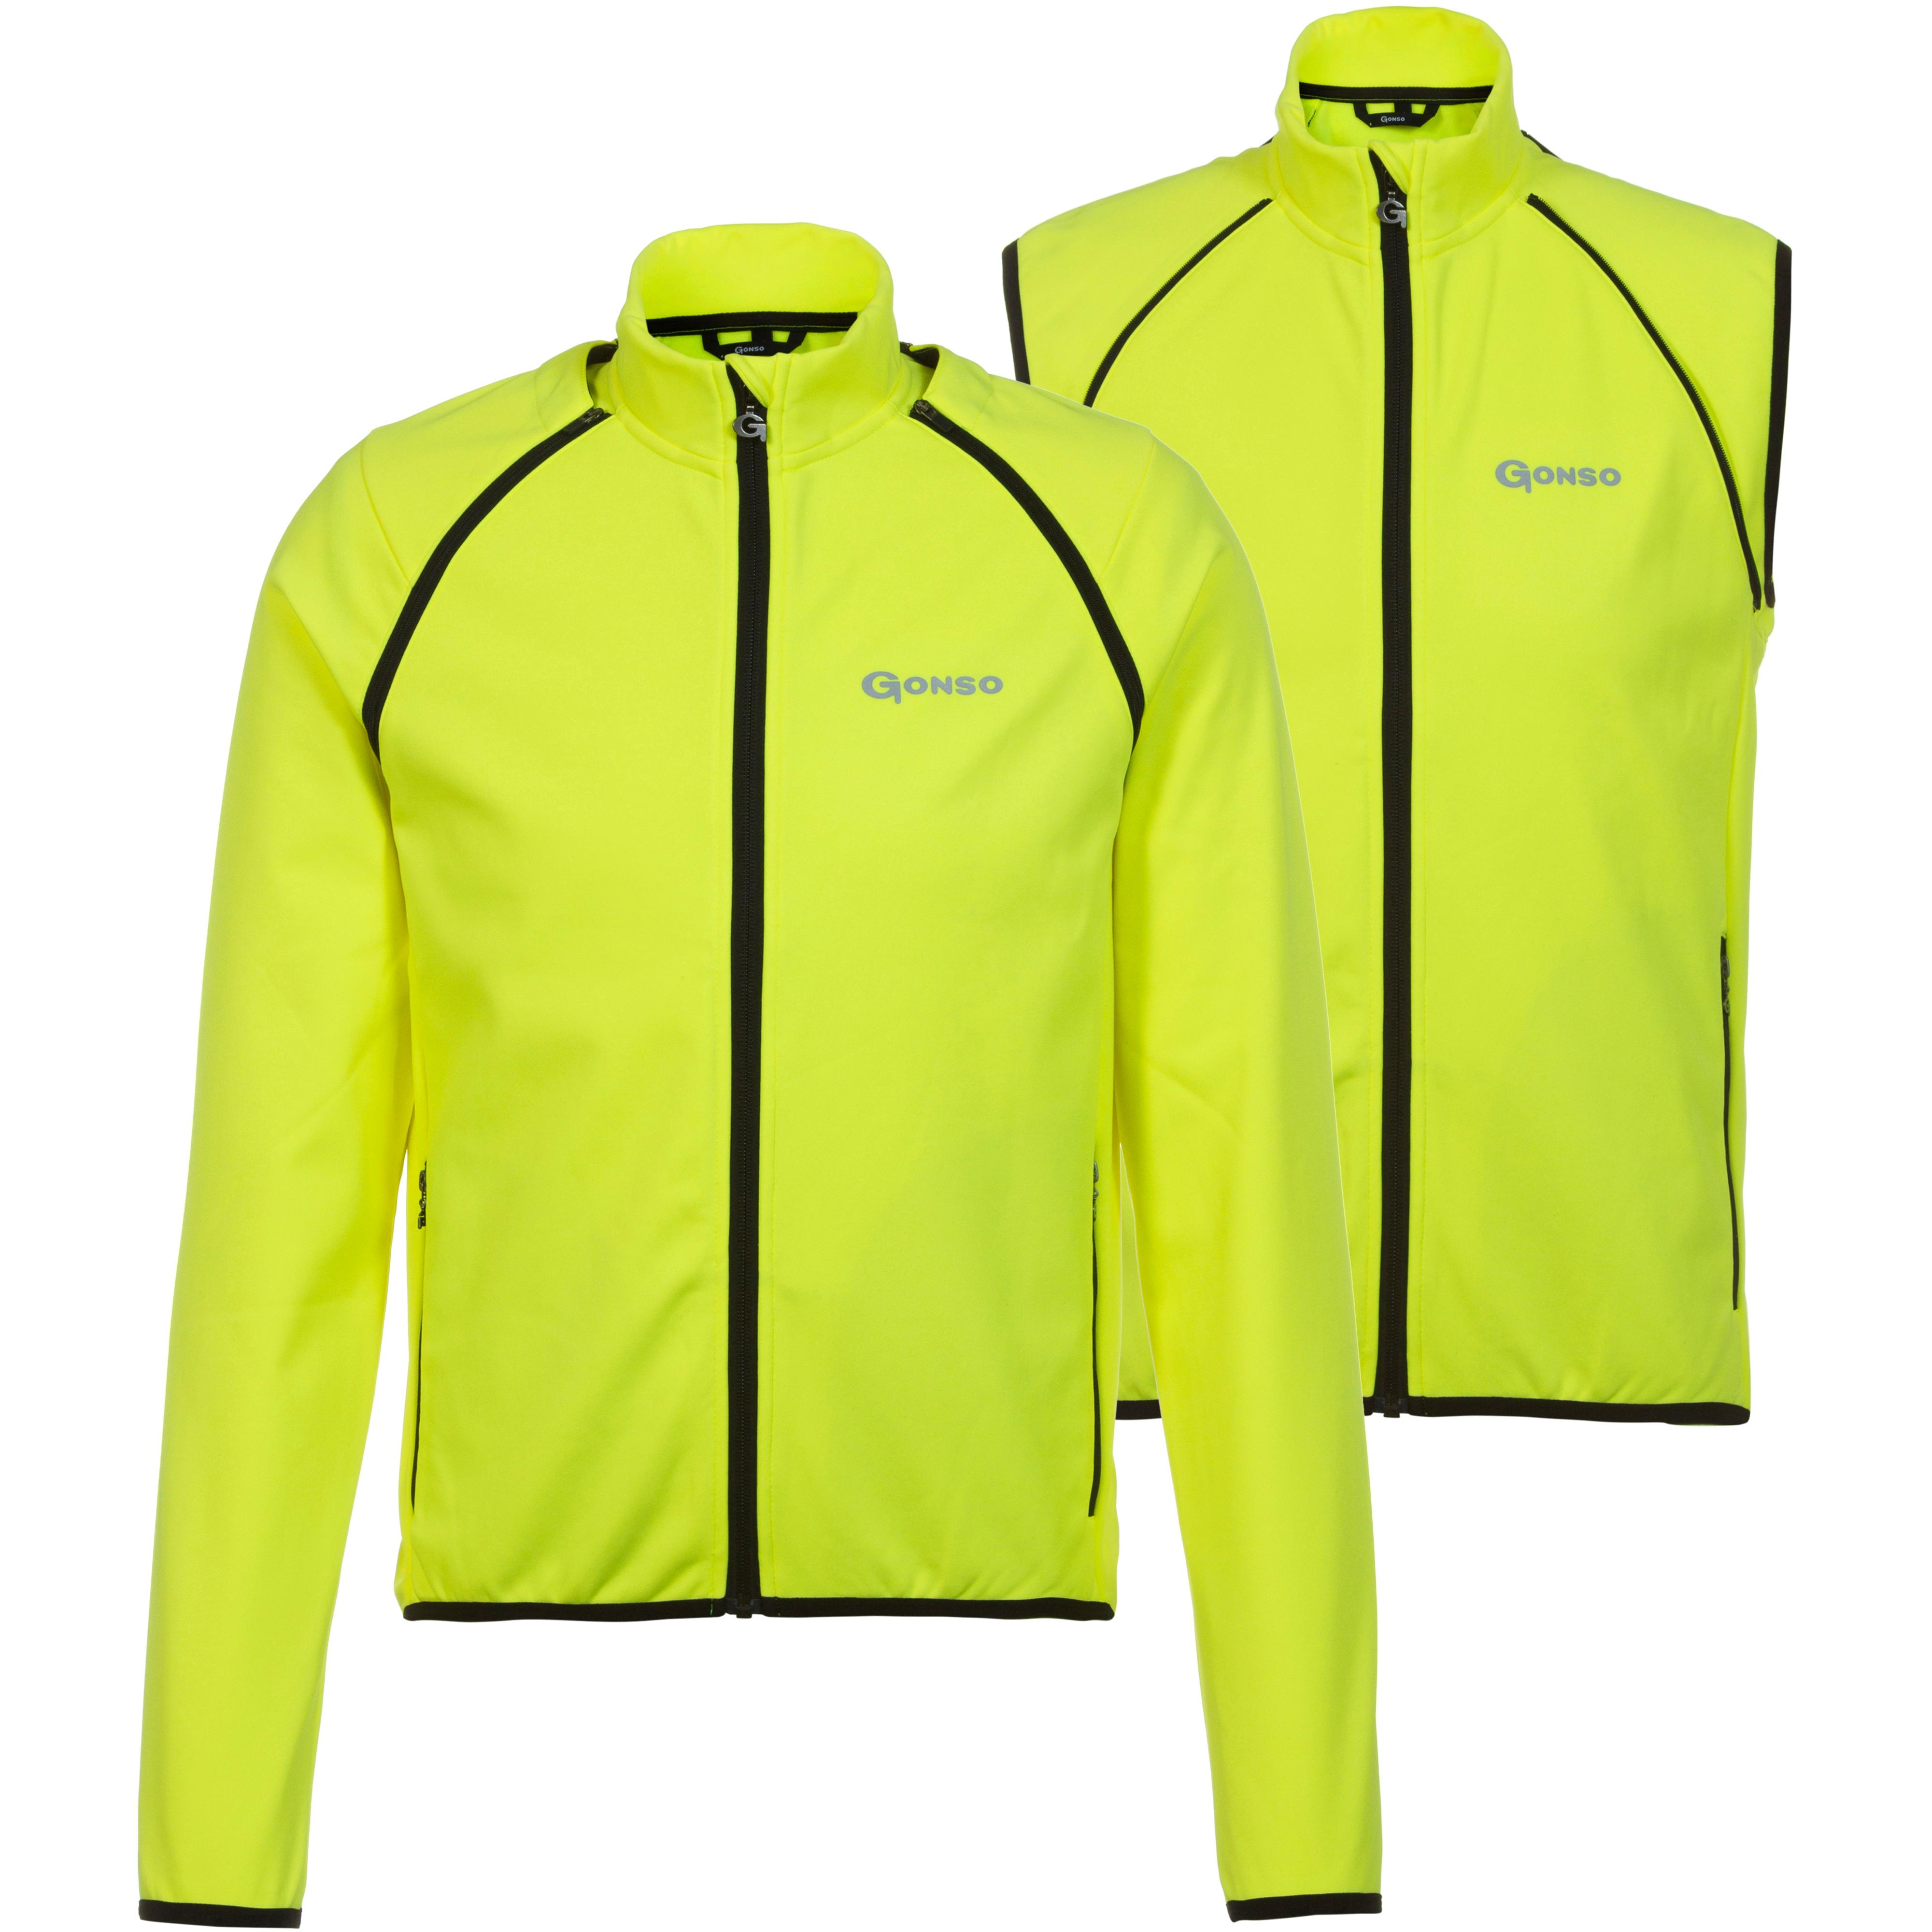 Shop Online kaufen von Herren safety Gonso Fahrradjacke SportScheck im yellow